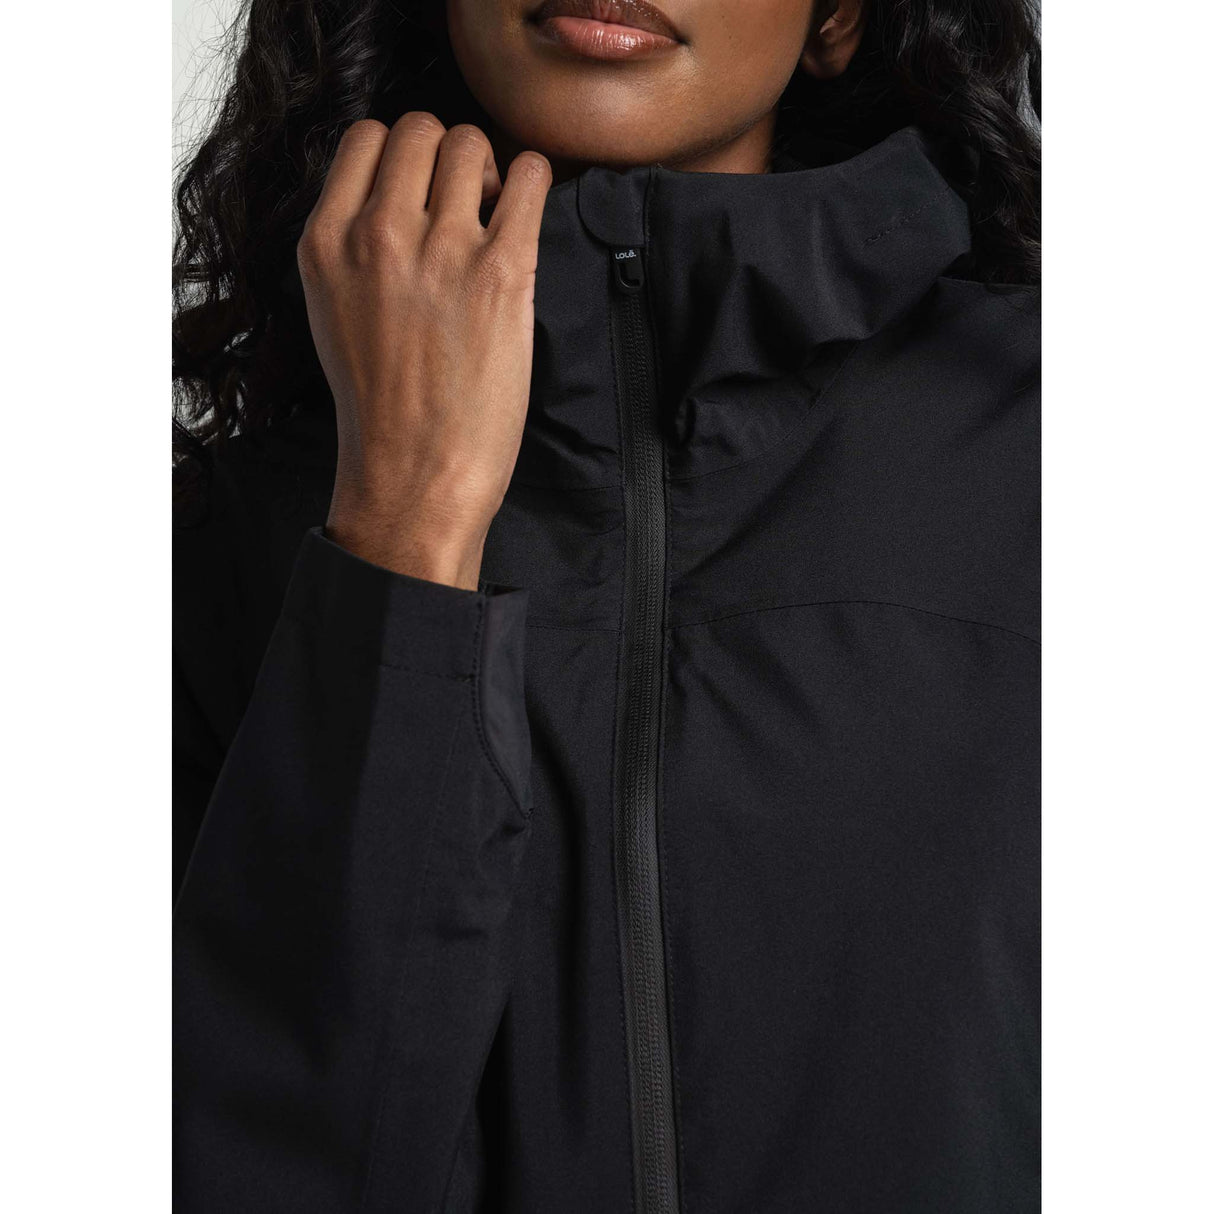 Lolë manteau de pluie Element femme zip- noir